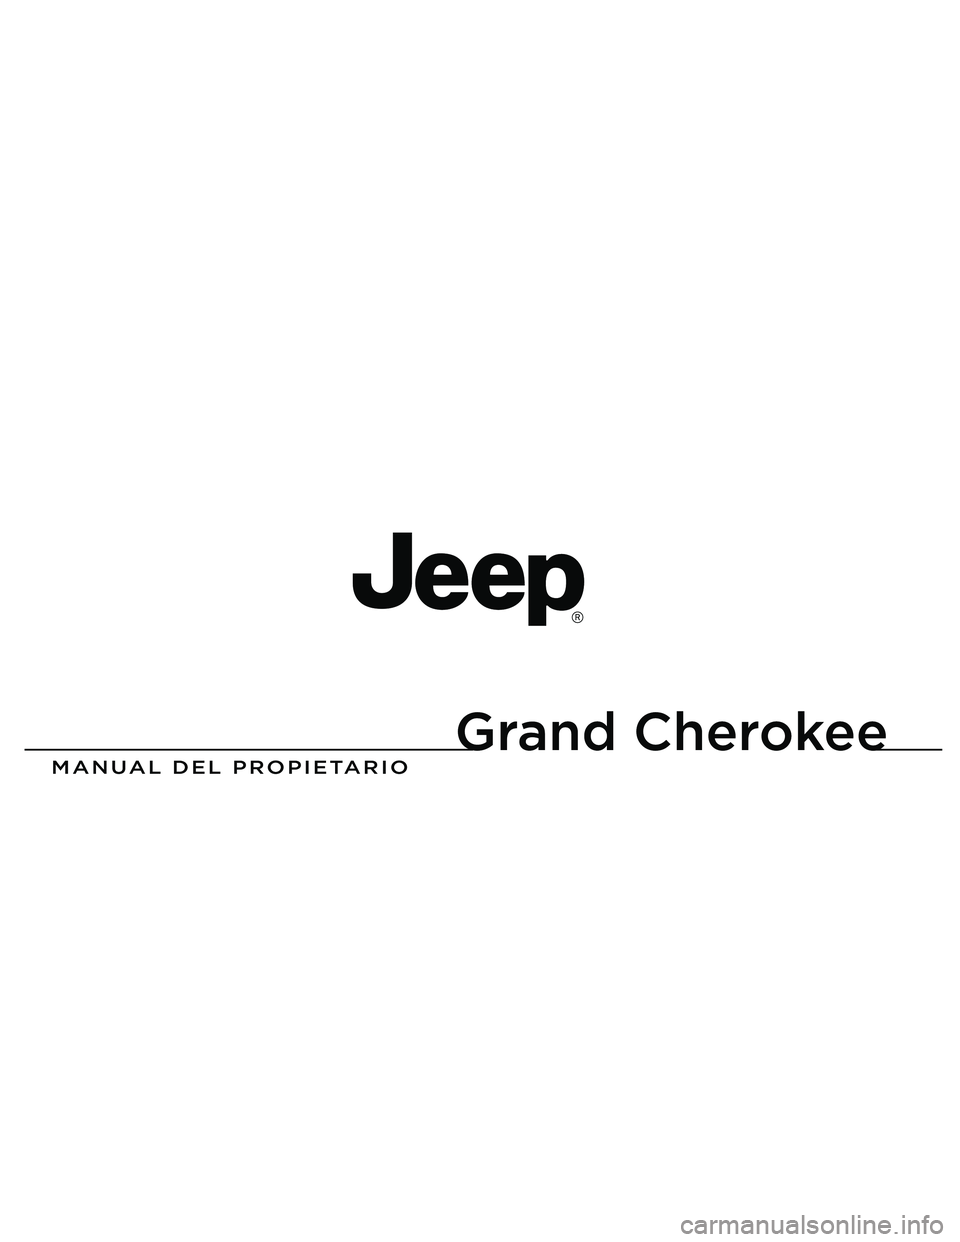 JEEP GRAND CHEROKEE 2016  Manual de Empleo y Cuidado (in Spanish) 
Grand Cherokee

MANUAL DEL PROPIETARIO
2013 Grand Cherokee
13WK741-126-PRI-AAImpreso en EE.UU. 13 